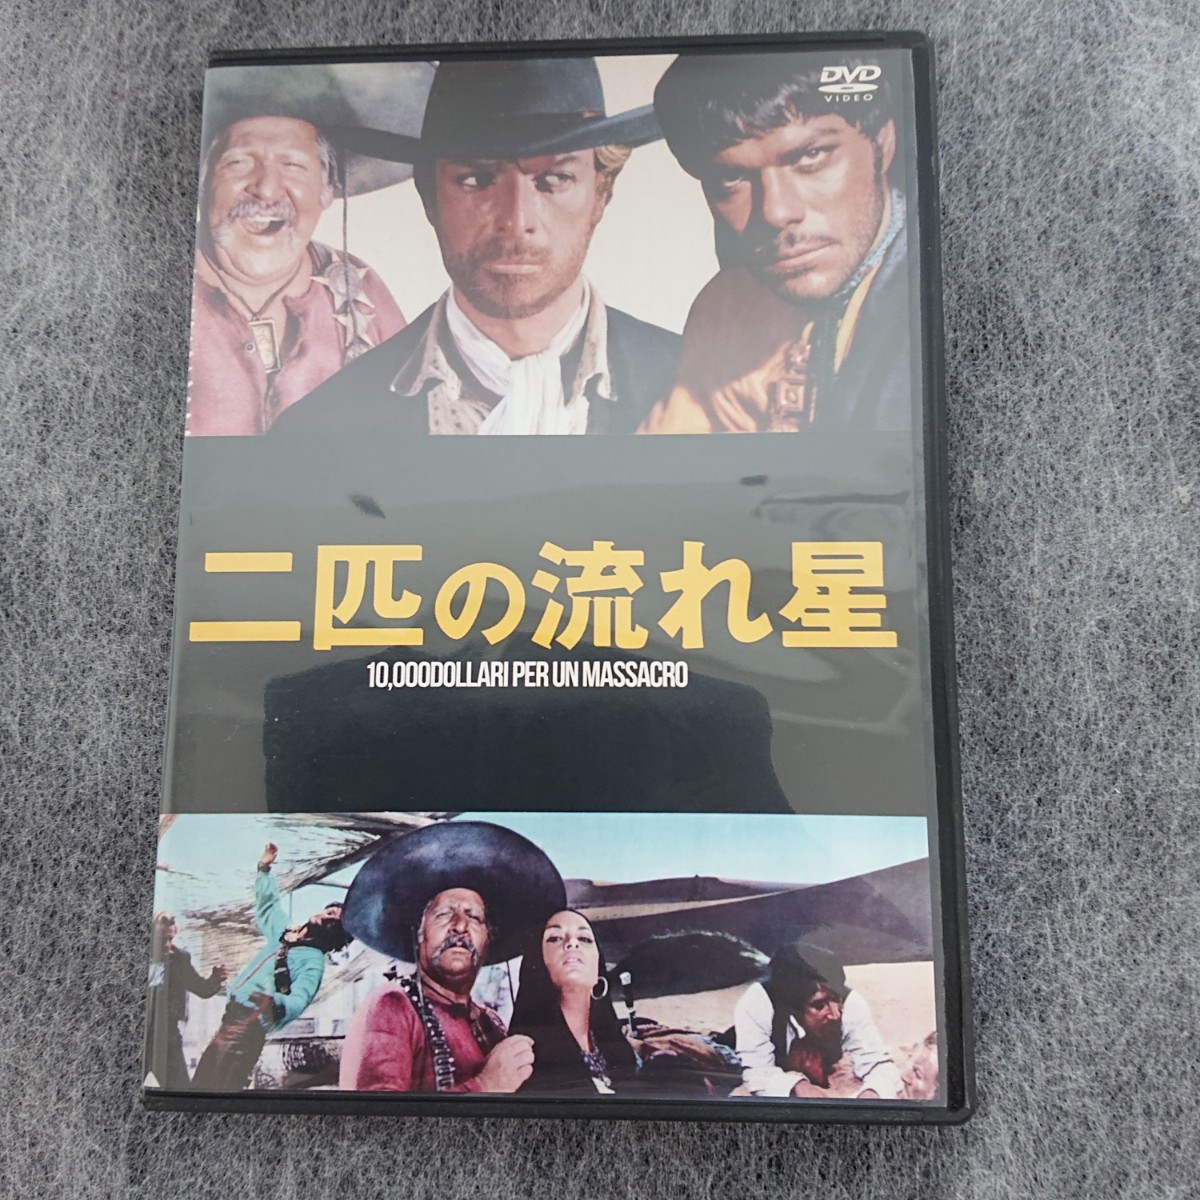 二匹の流れ星 DVD イタリア語 日本語字幕